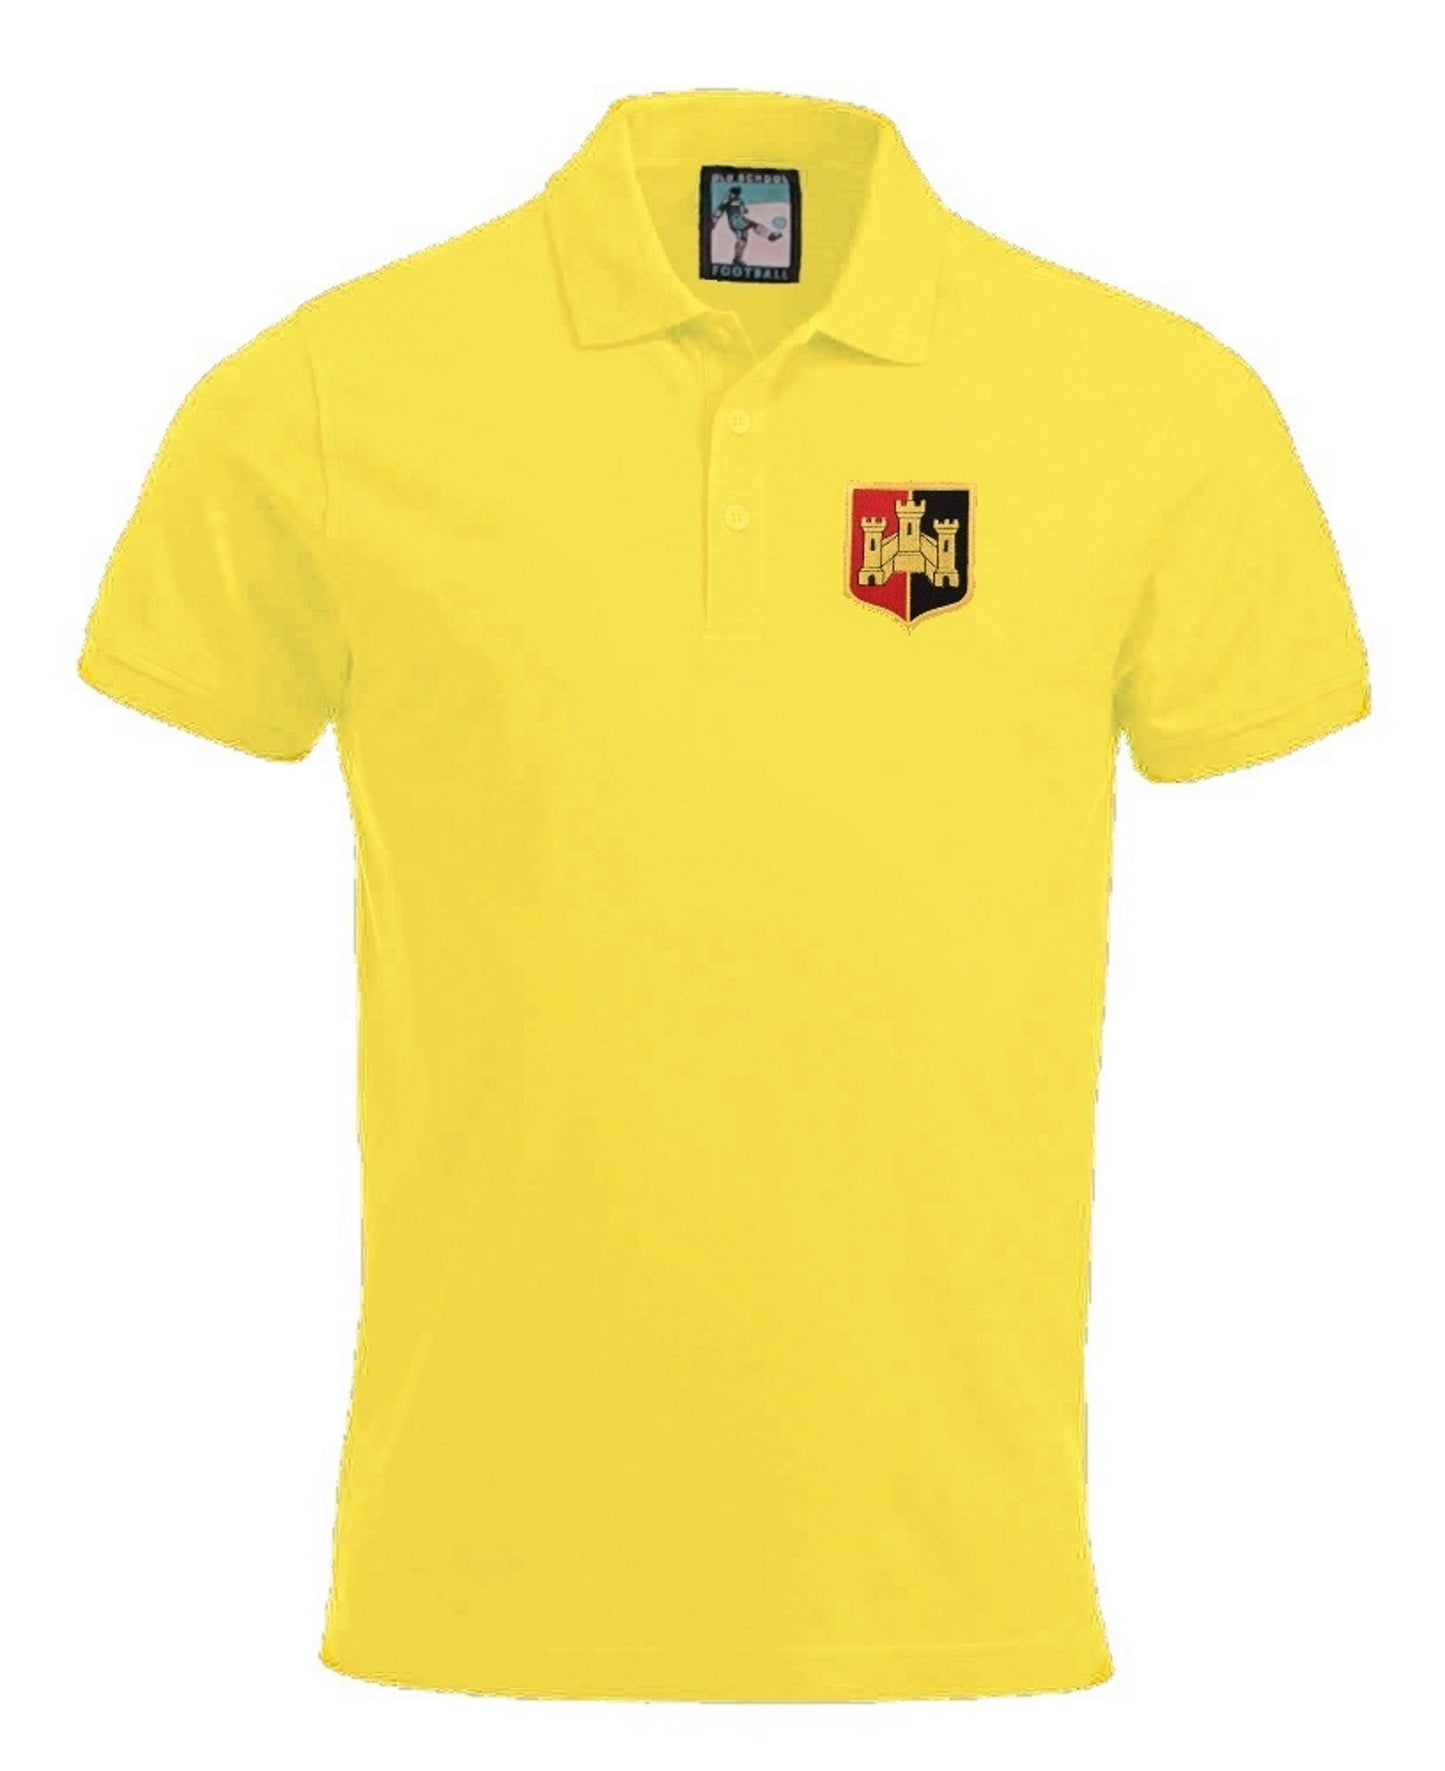 Exeter City Retro Football Polo Shirt 1950s - Polo